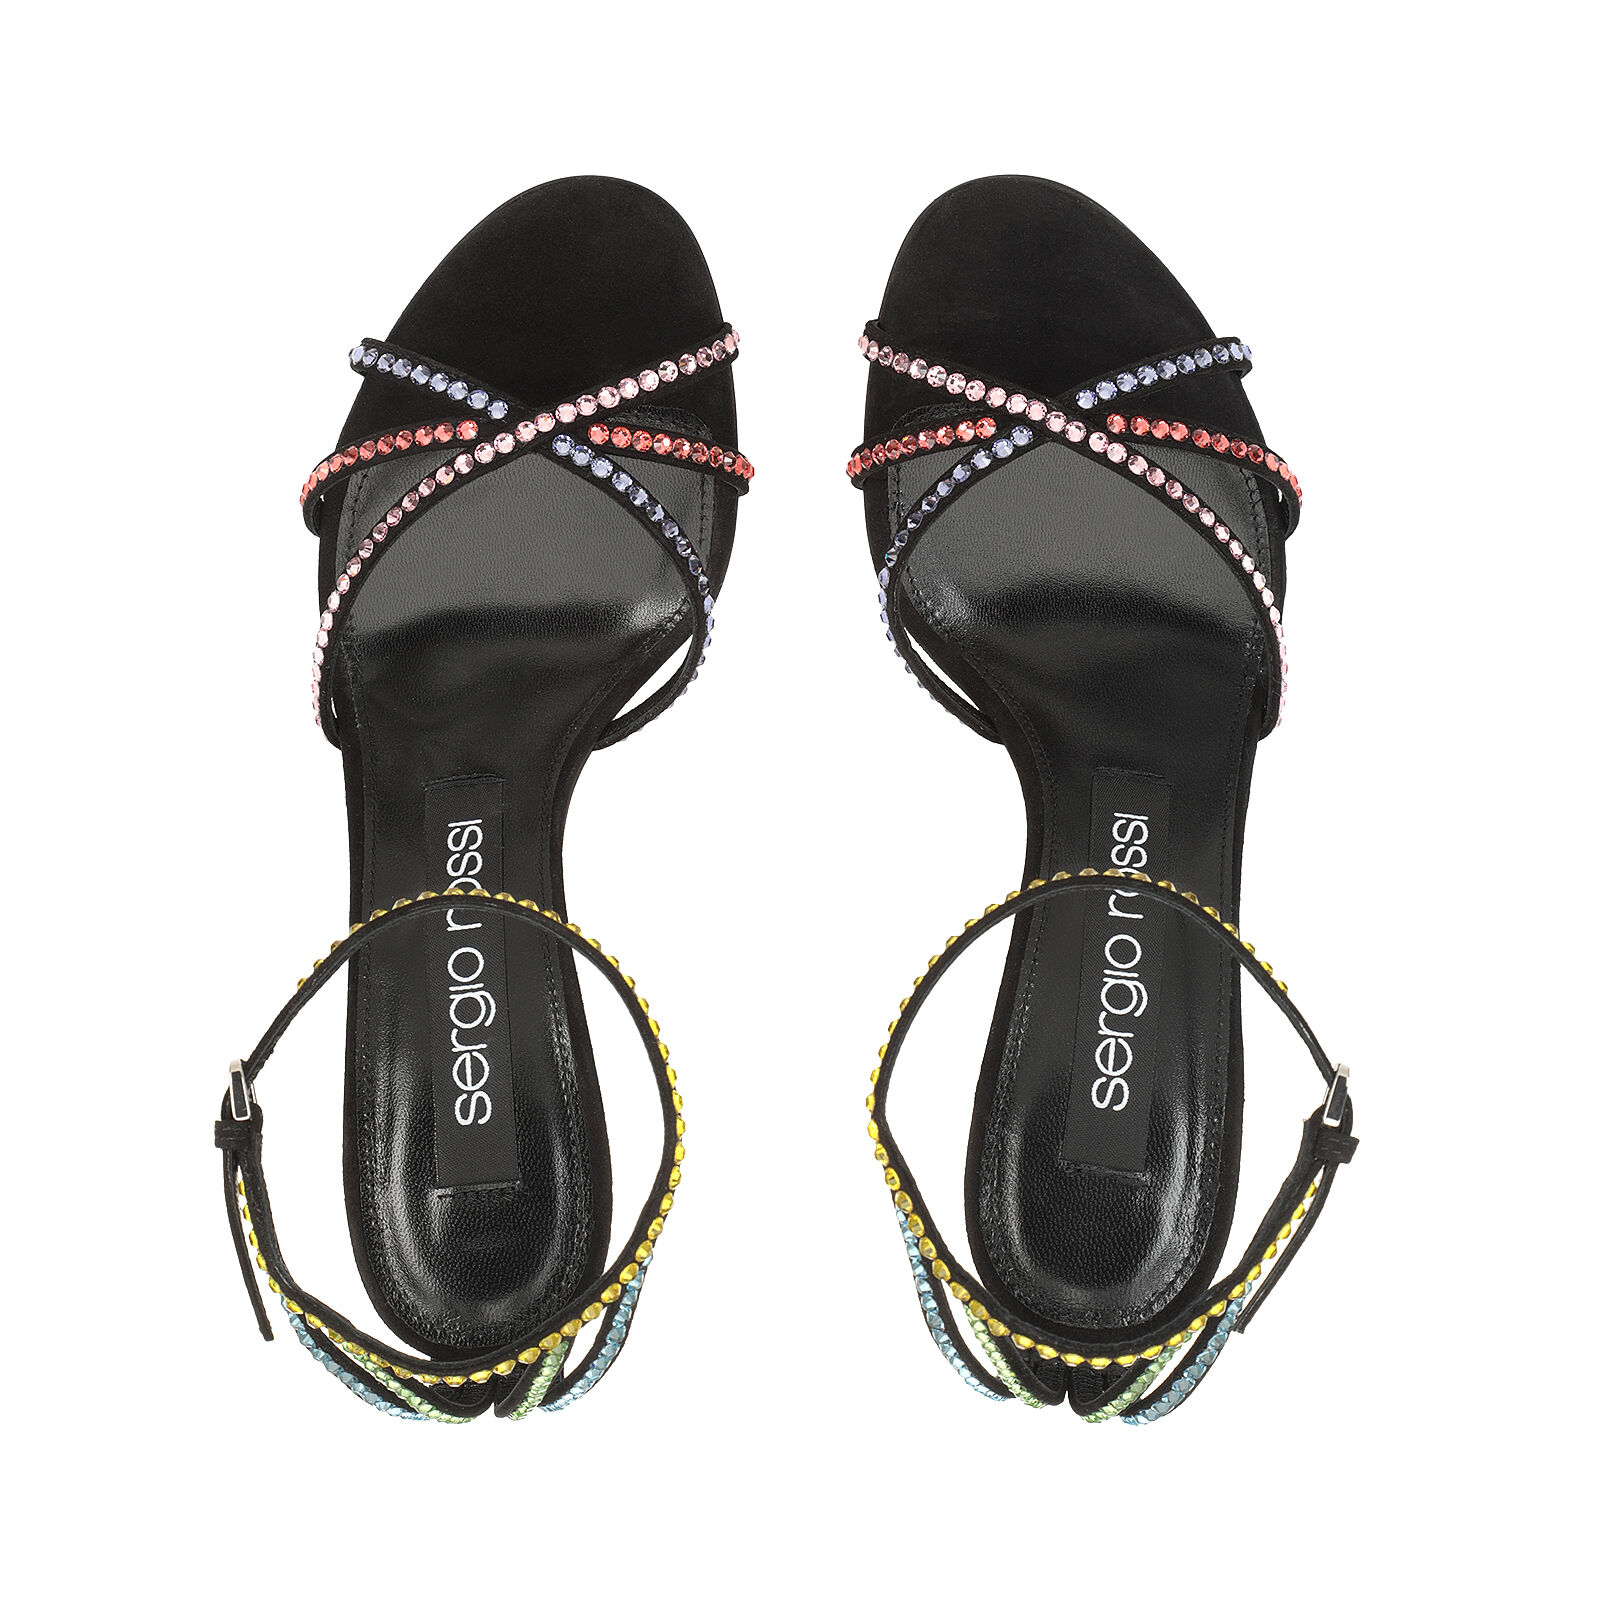 Godiva - Sandals Black/Multicolor, 3